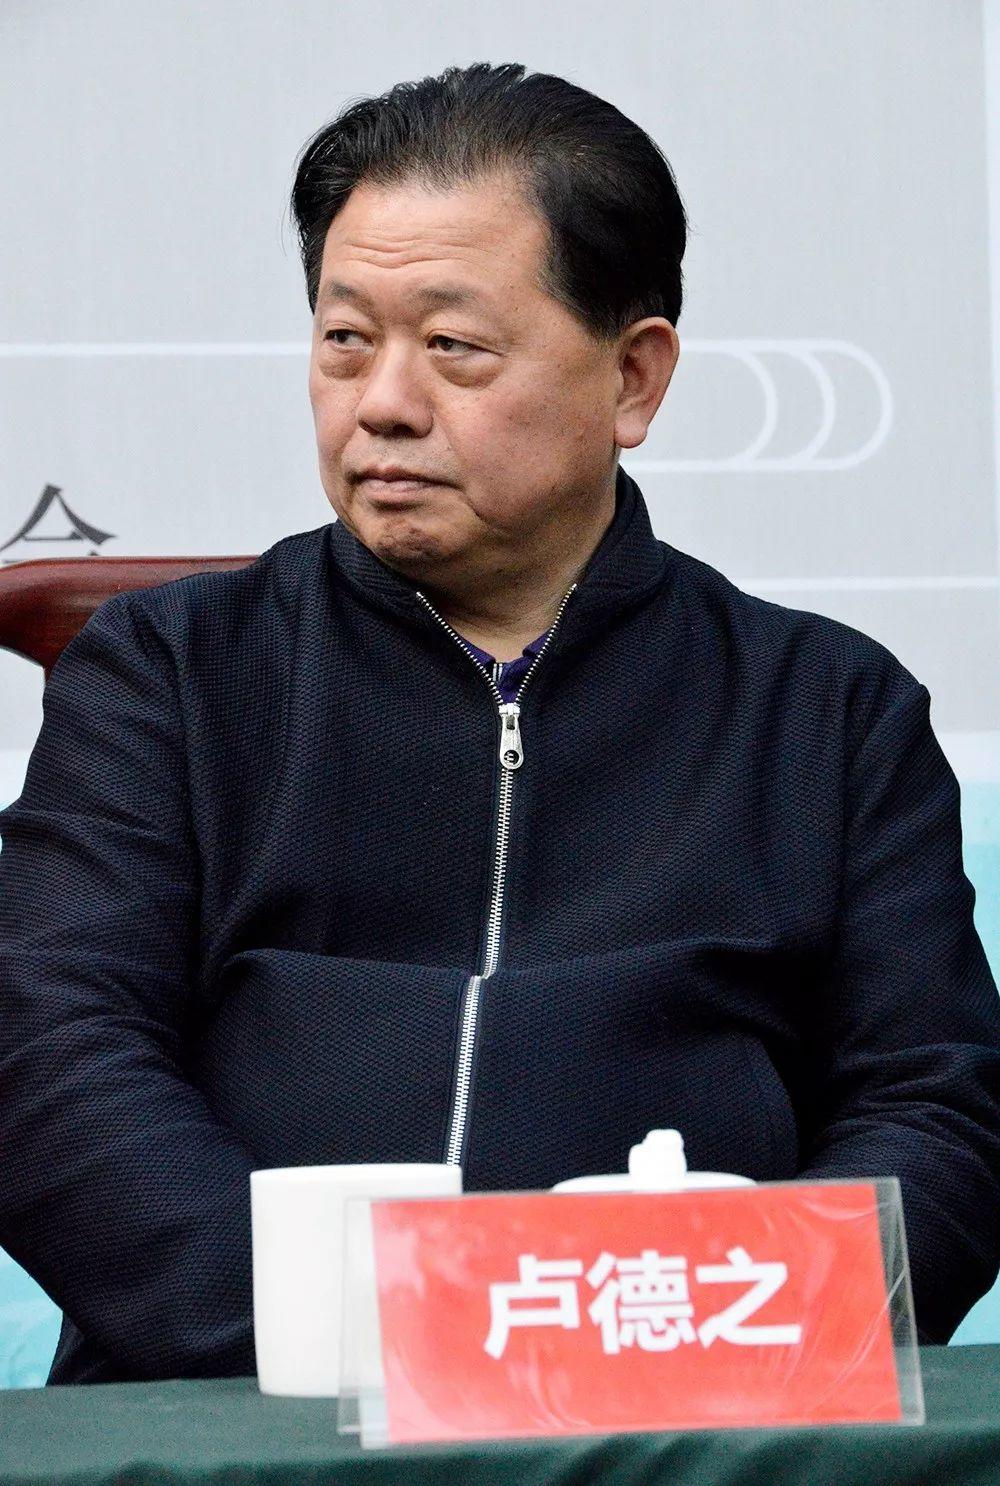 沈鹏书法艺术公益基金启动仪式在北京举行